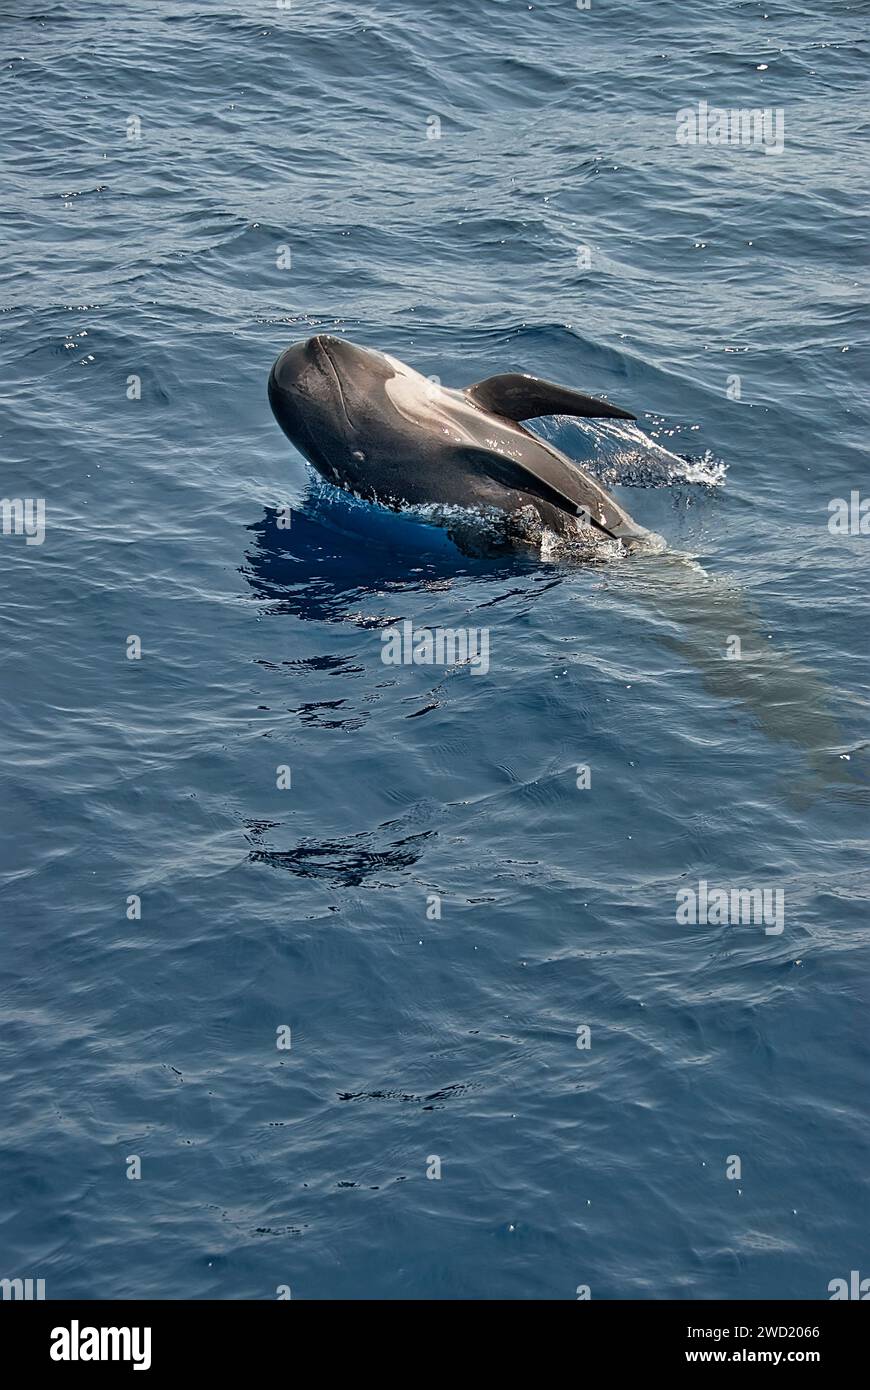 Ein Grindwal (Globicephala melas), der die Oberfläche des Ozeans durchbricht. Der Wal wird mitten im Sprung gefangen, wobei sein Körper teilweise über dem Wasser liegt Stockfoto